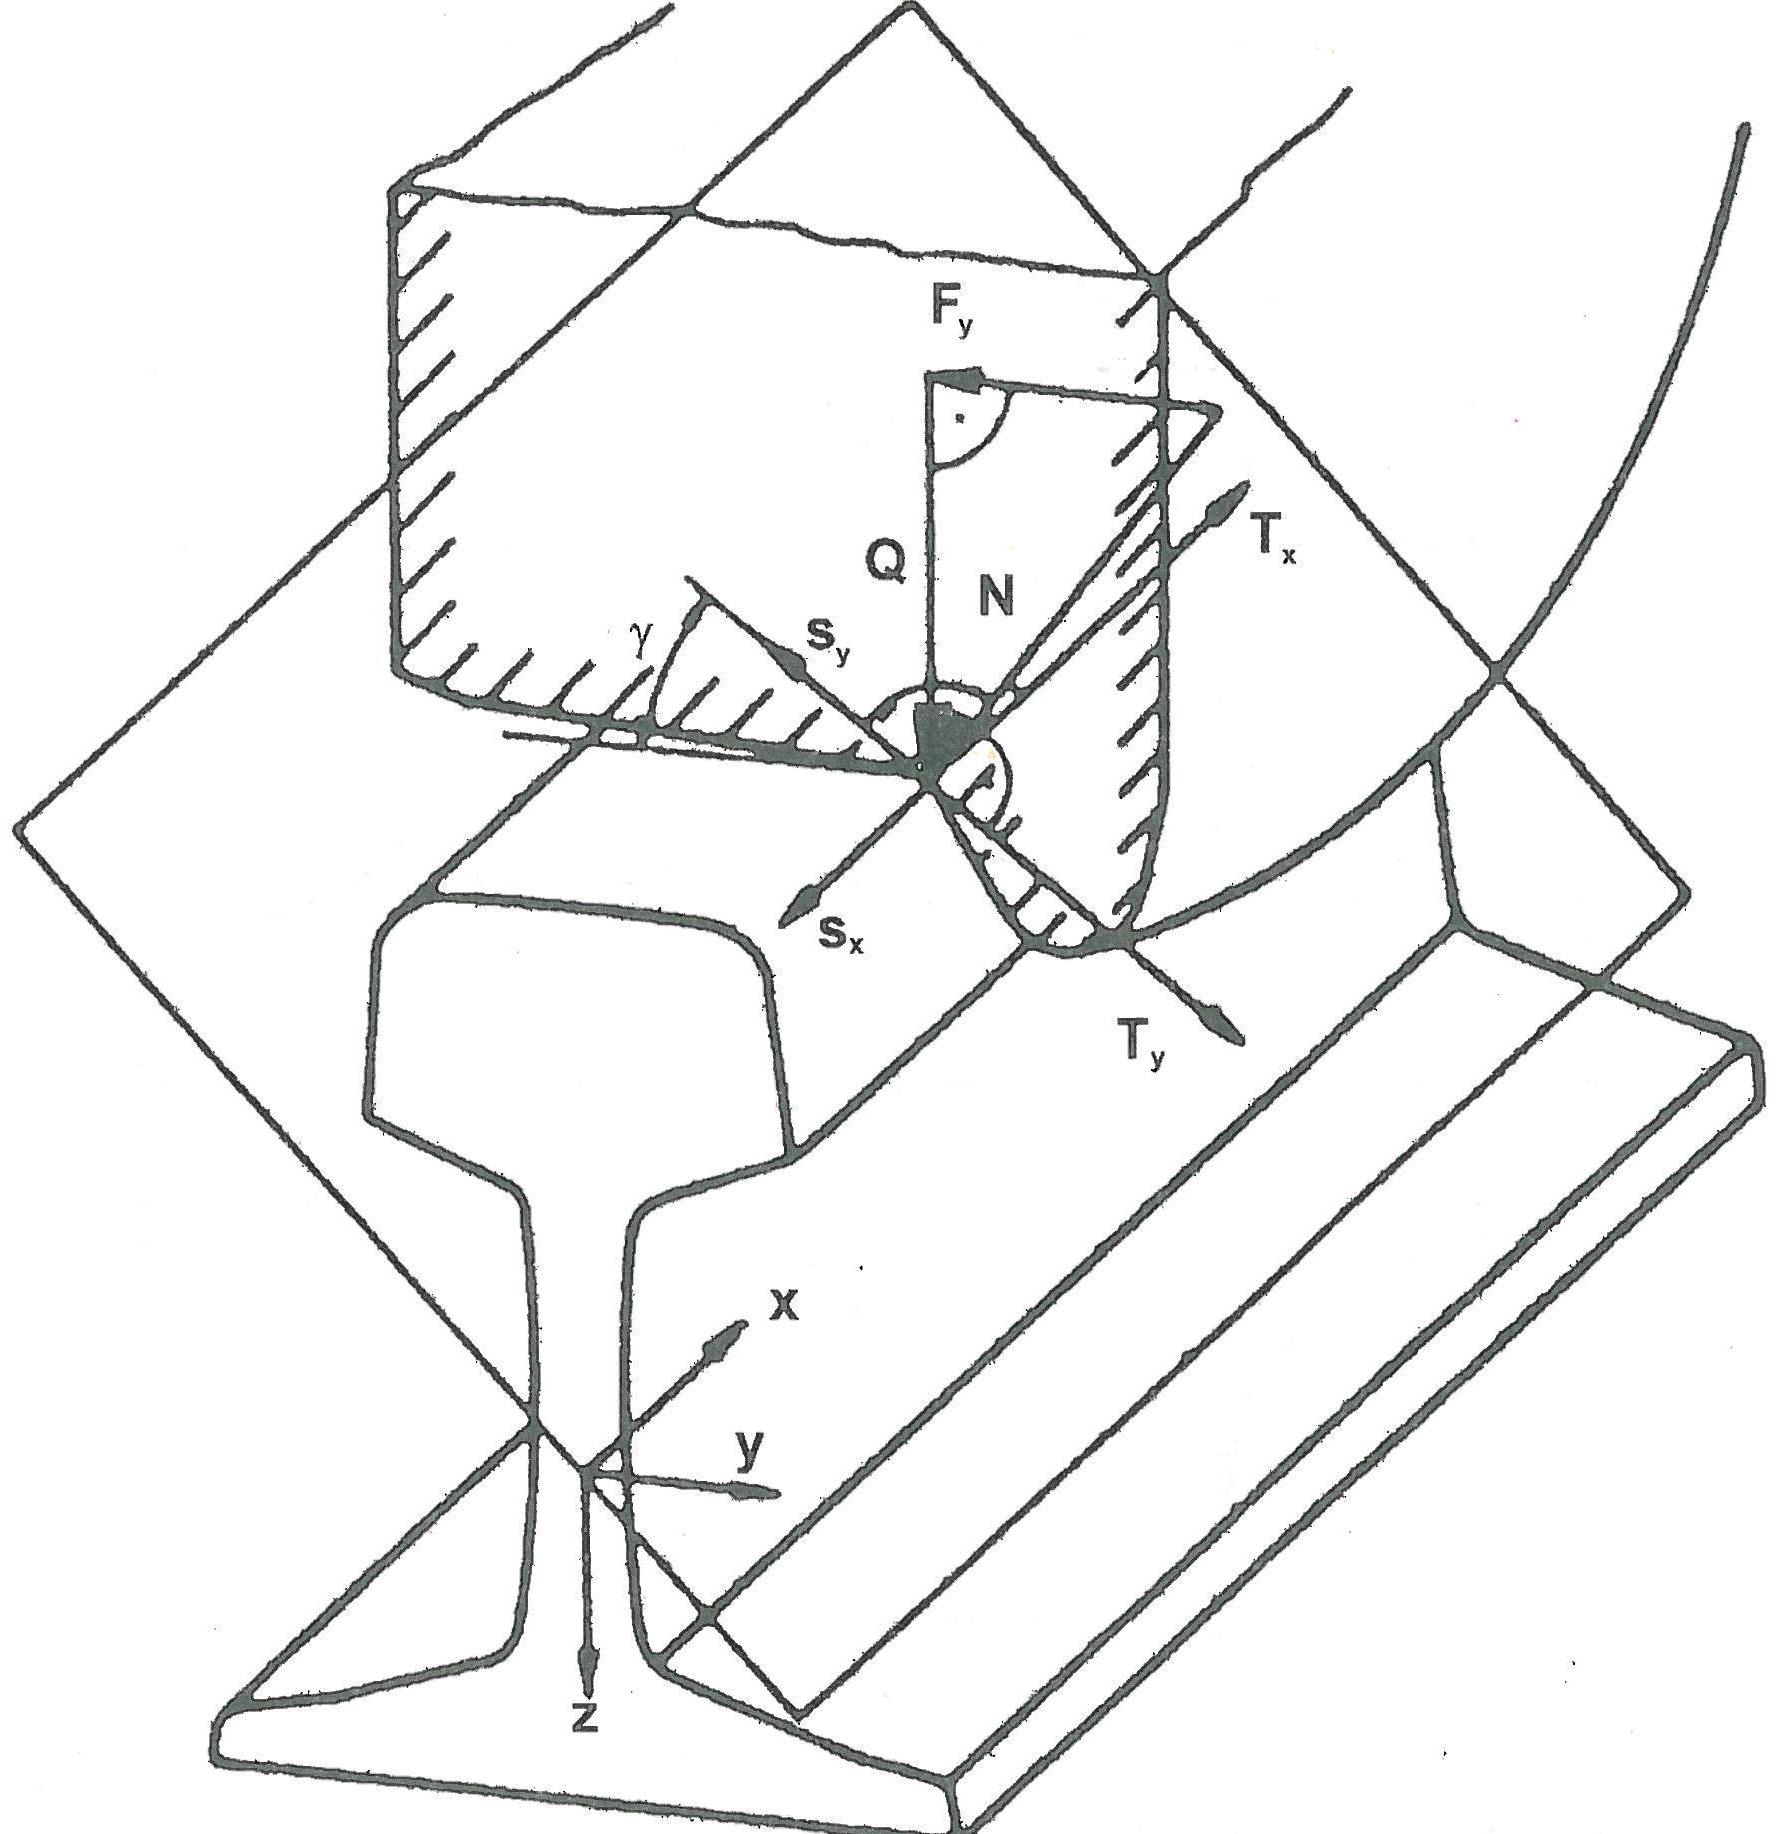 Abb. 1: Rad-Schiene-System mit Darstellung wesentlicher Kräfte